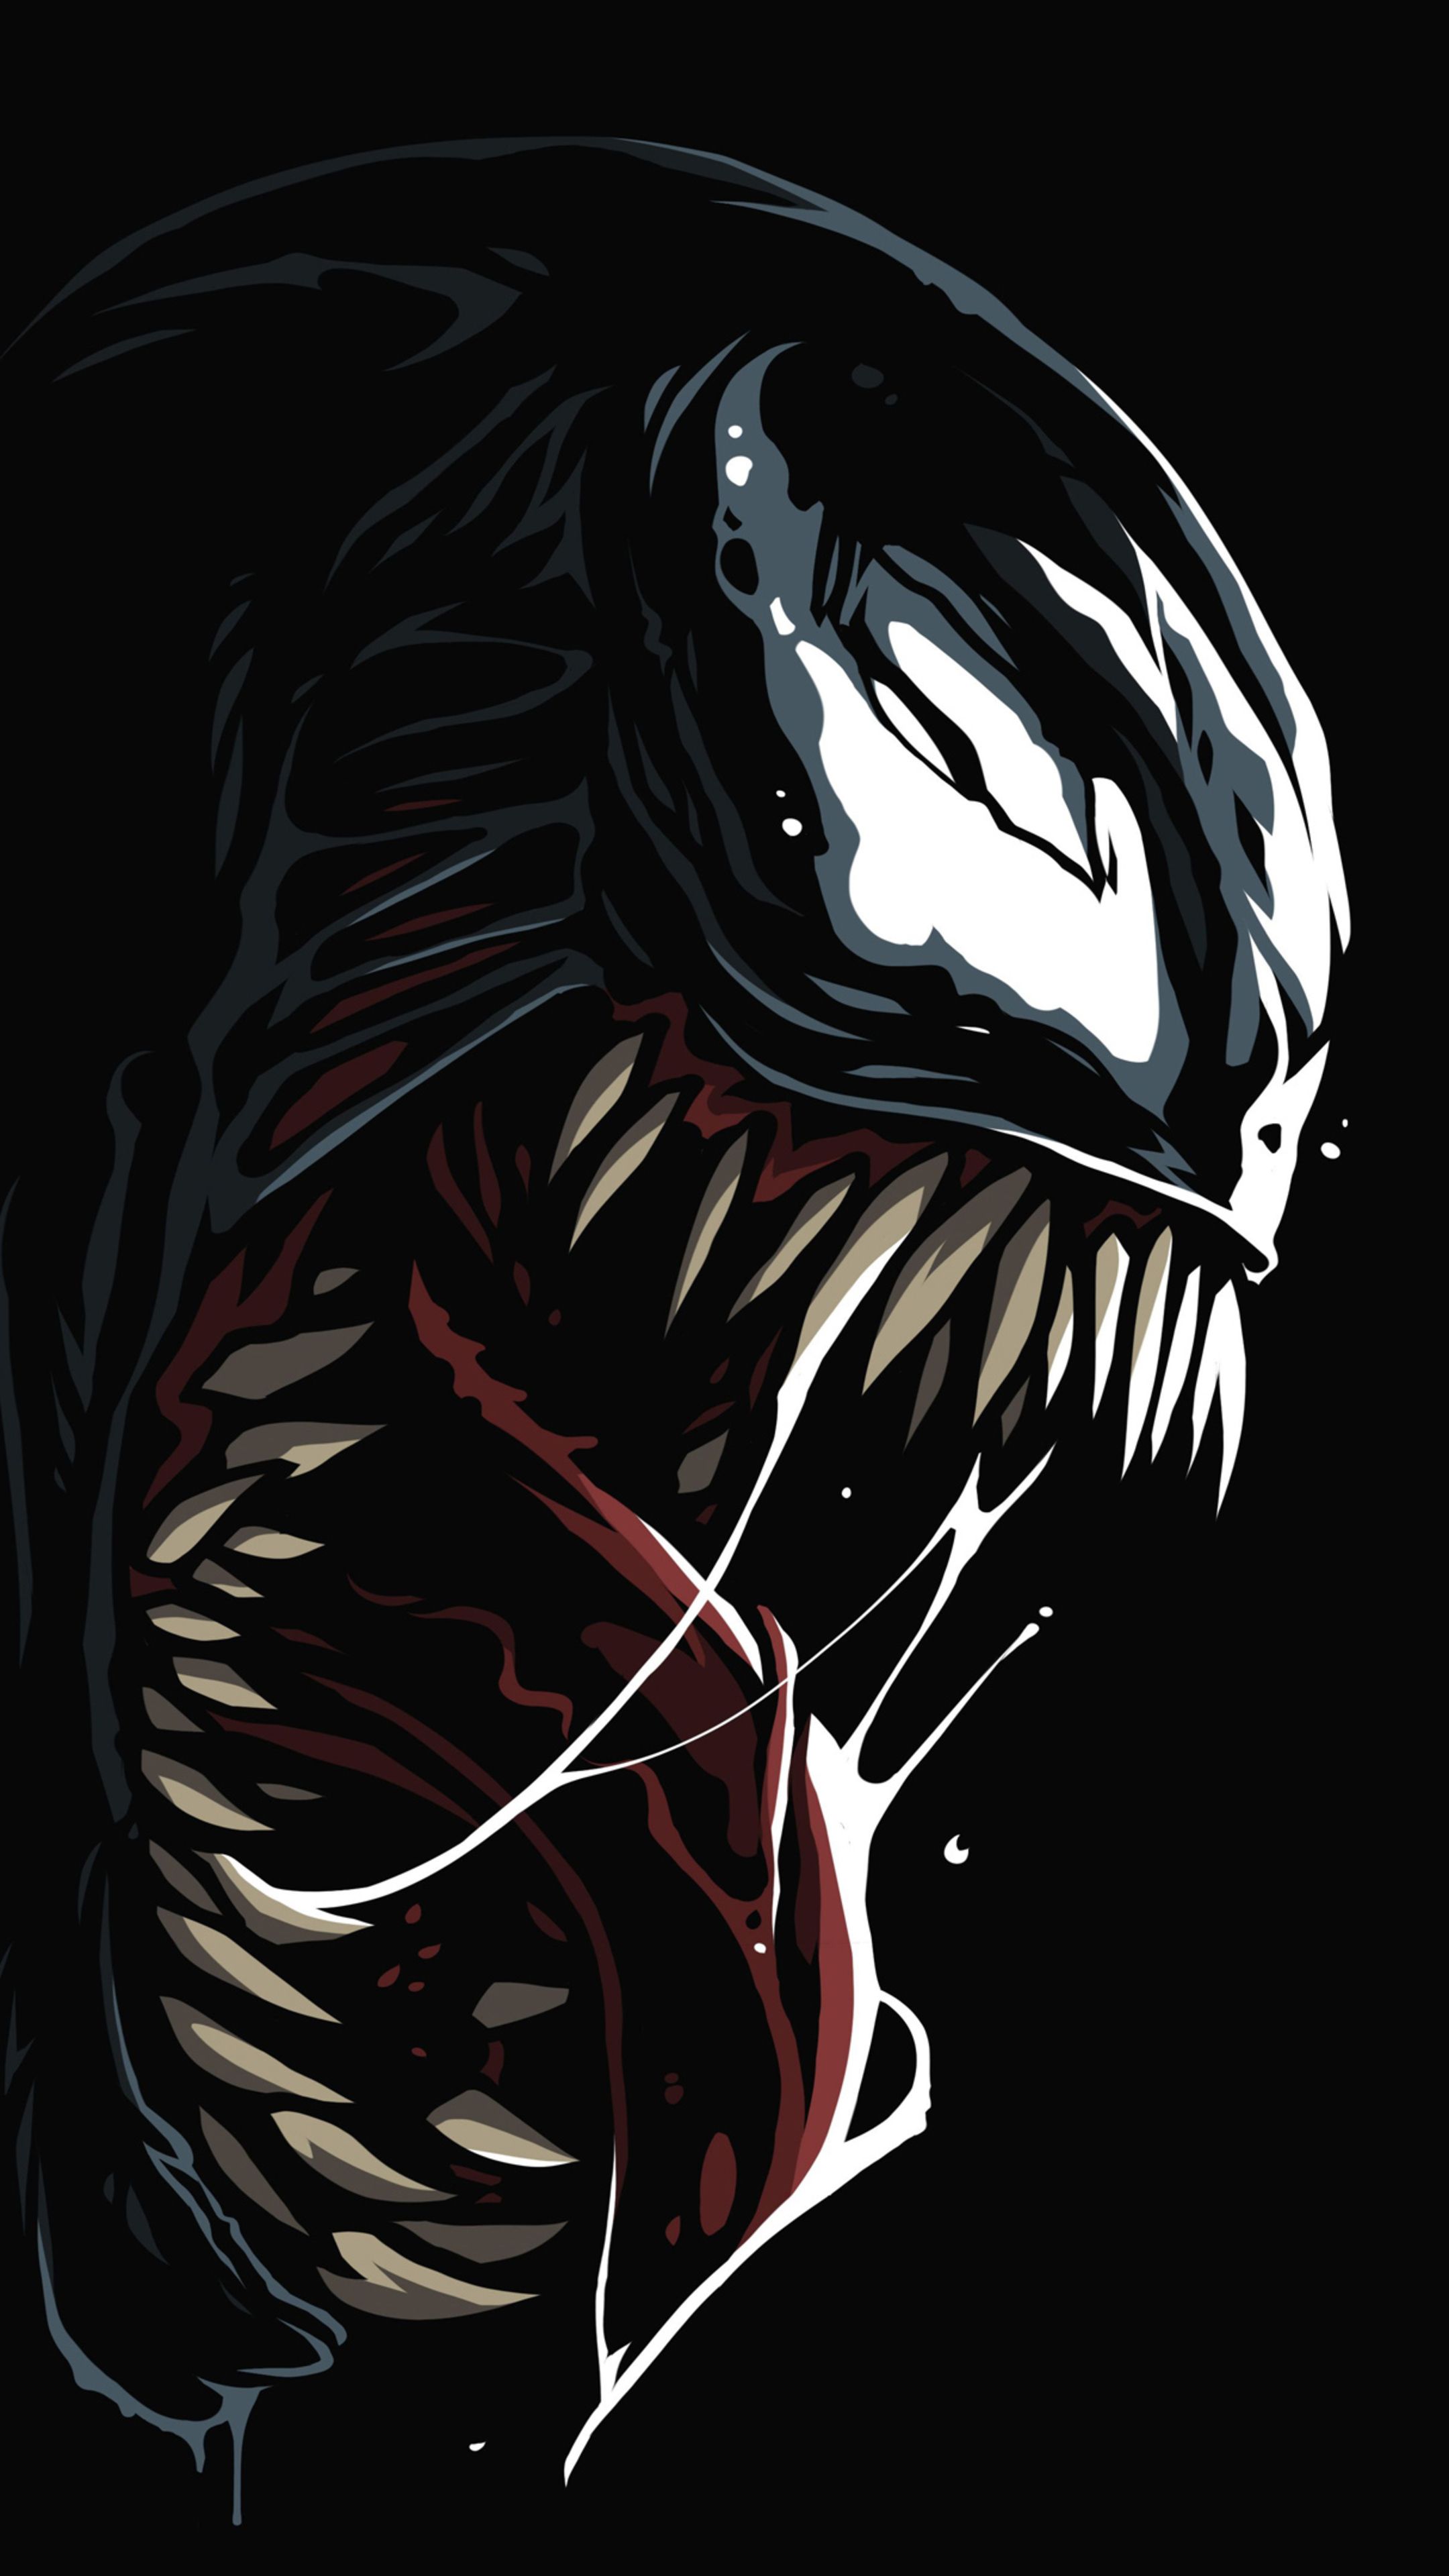 Các tín đồ của Venom, hãy chuẩn bị cho một trải nghiệm hoàn toàn mới với bộ hình nền Venom Amoled 4k miễn phí. Hãy tận dụng hình ảnh chất lượng cao và sống lại trận chiến giữa Venom và những kẻ thù man rợ.